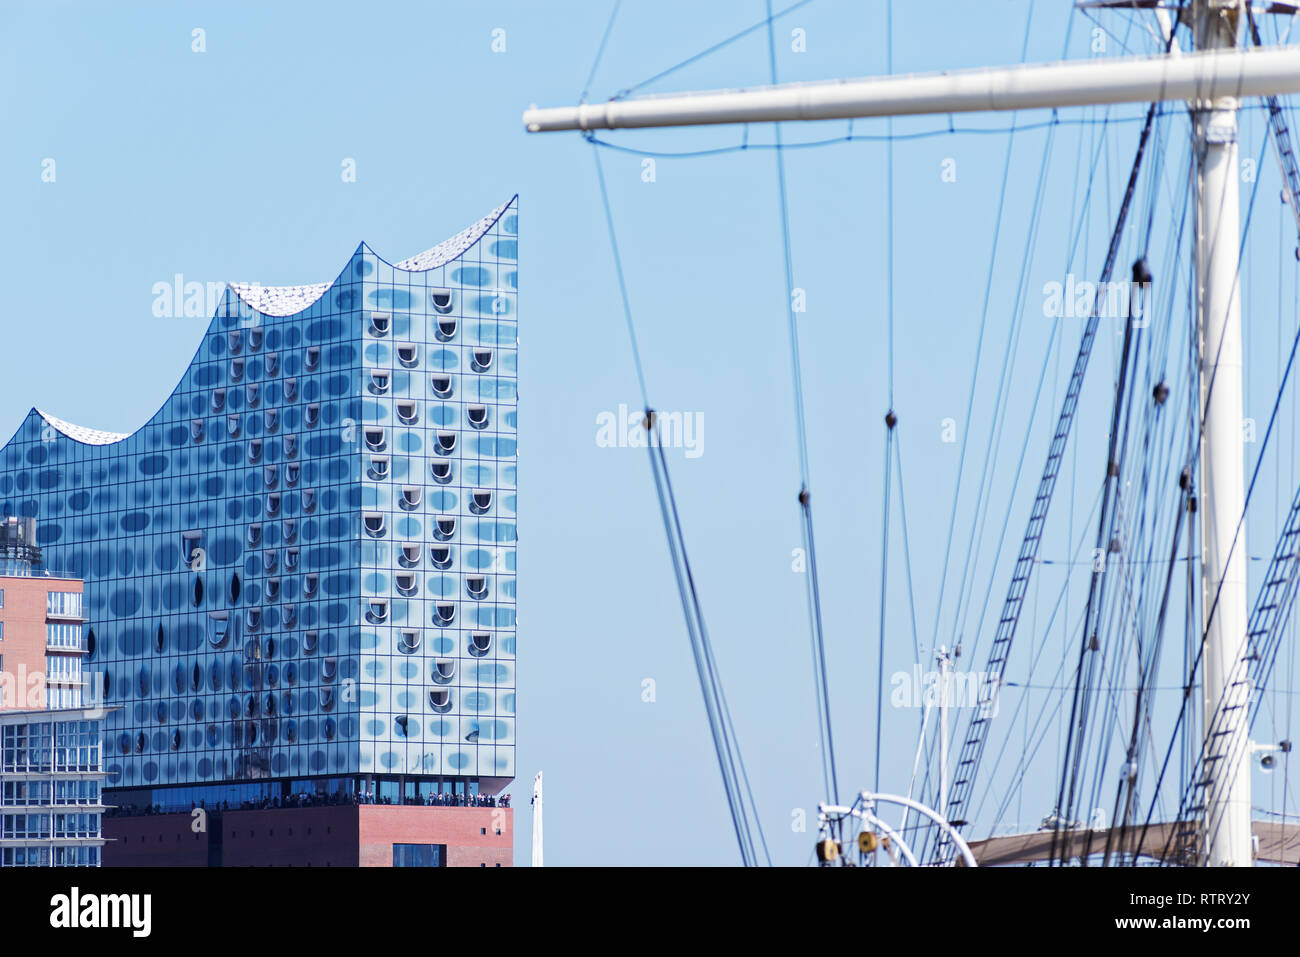 Hamburg, Deutschland, 27. Juni 2018: Die elbphilharmonie oder so genannte "Elphi' - Elbphilharmonie im Hafen von Hamburg gegen den klaren, blauen Himmel und Th Stockfoto